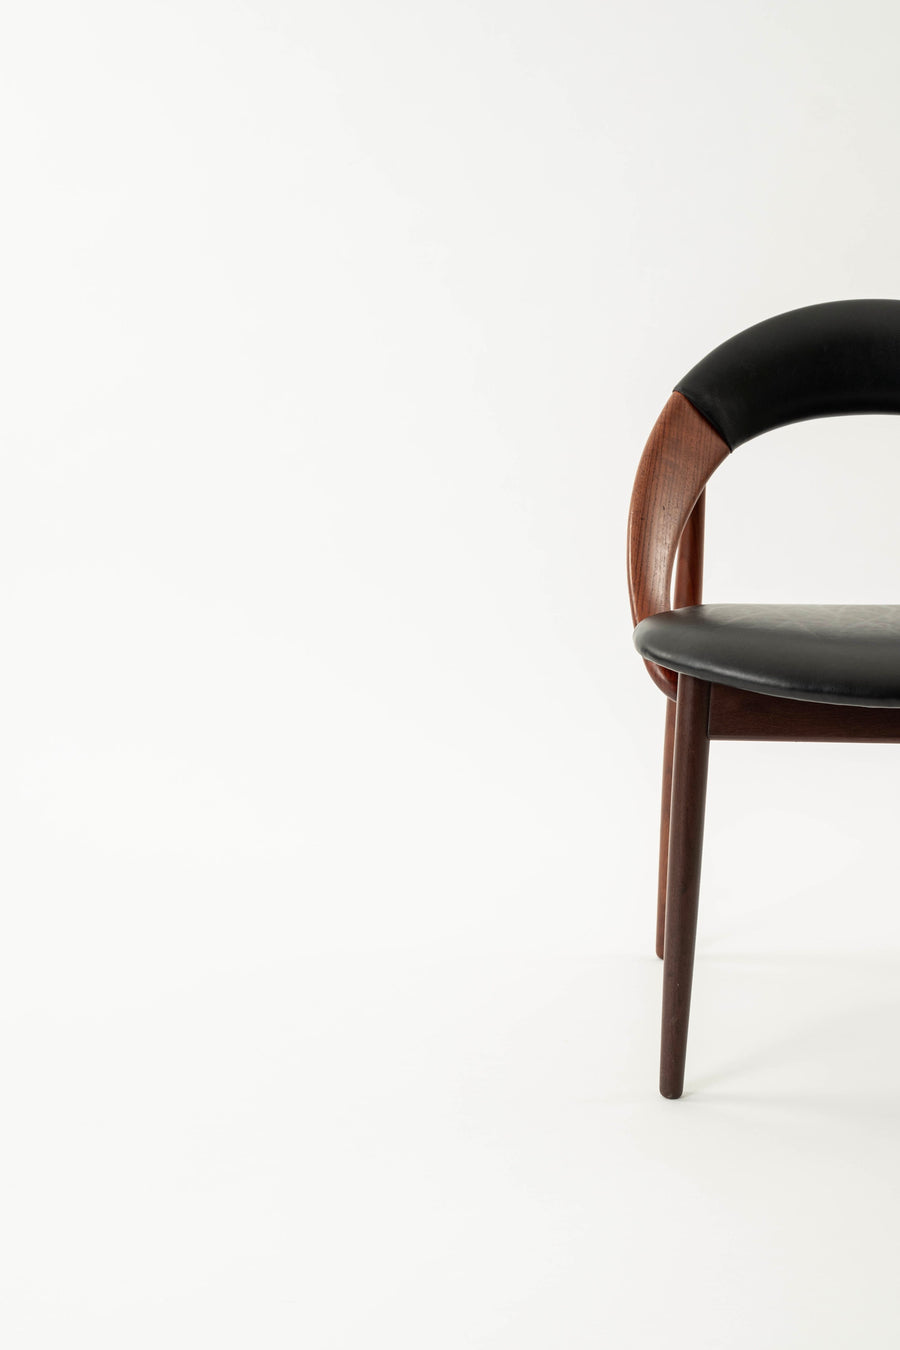 Arne Hovmand Olsen Black Leather Teak Chair